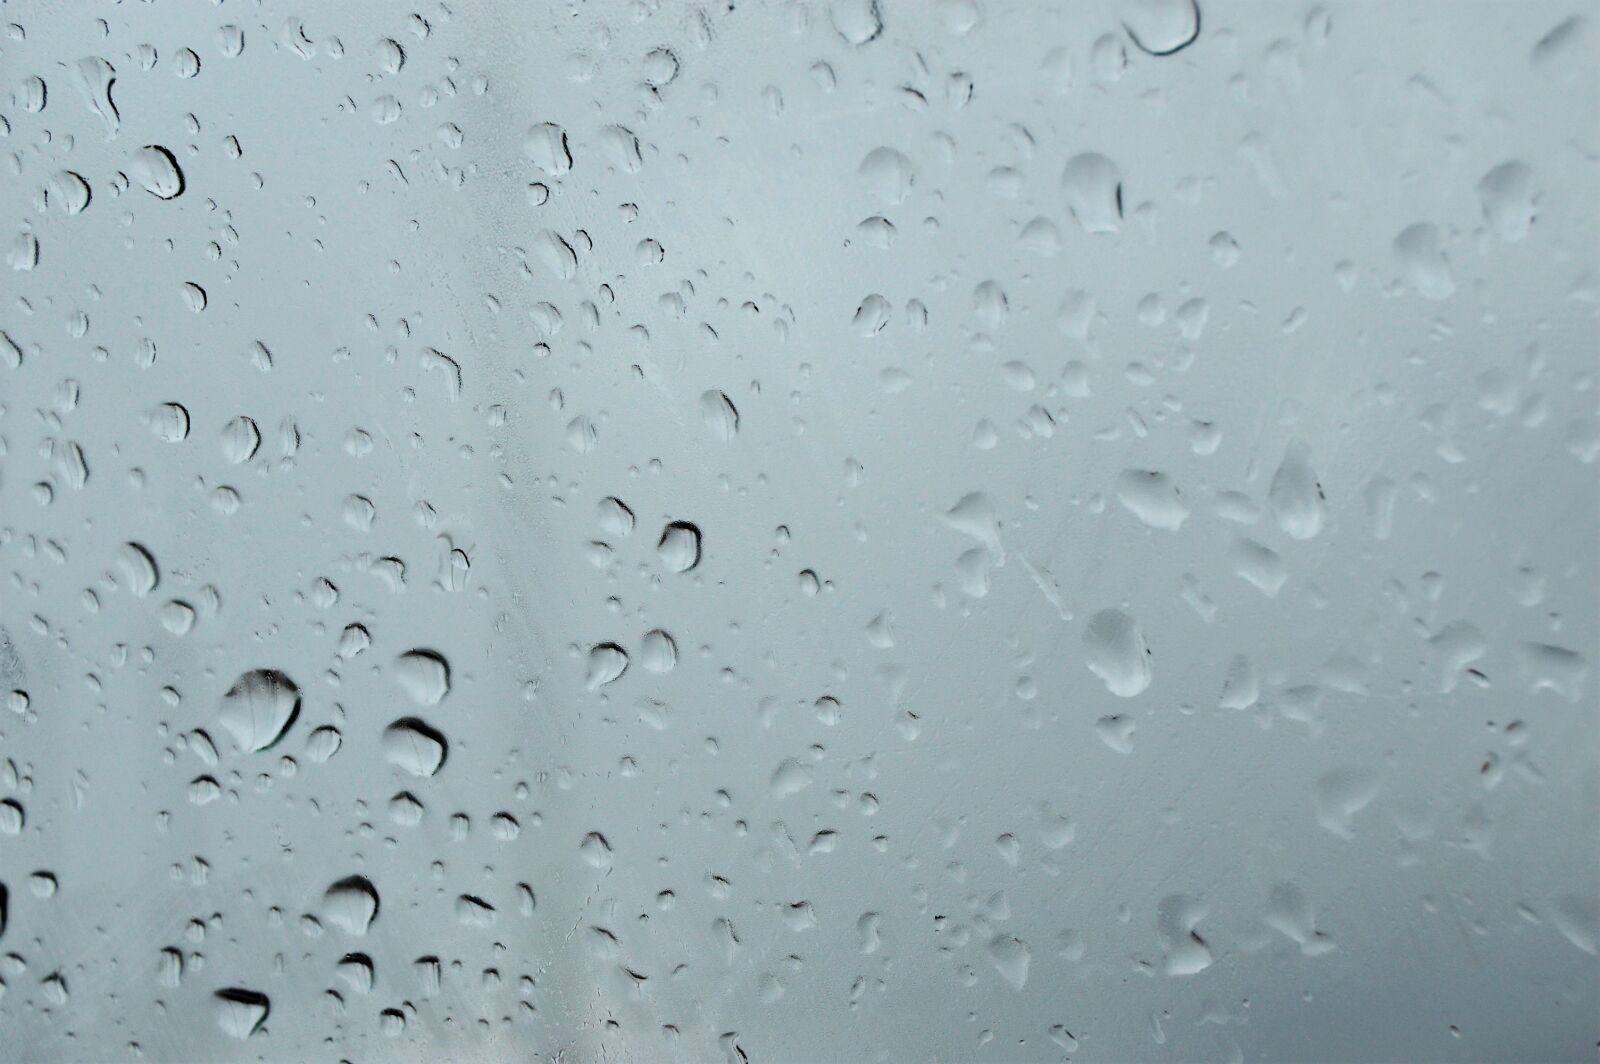 Nikon D3200 sample photo. Car, window, rain, rain photography